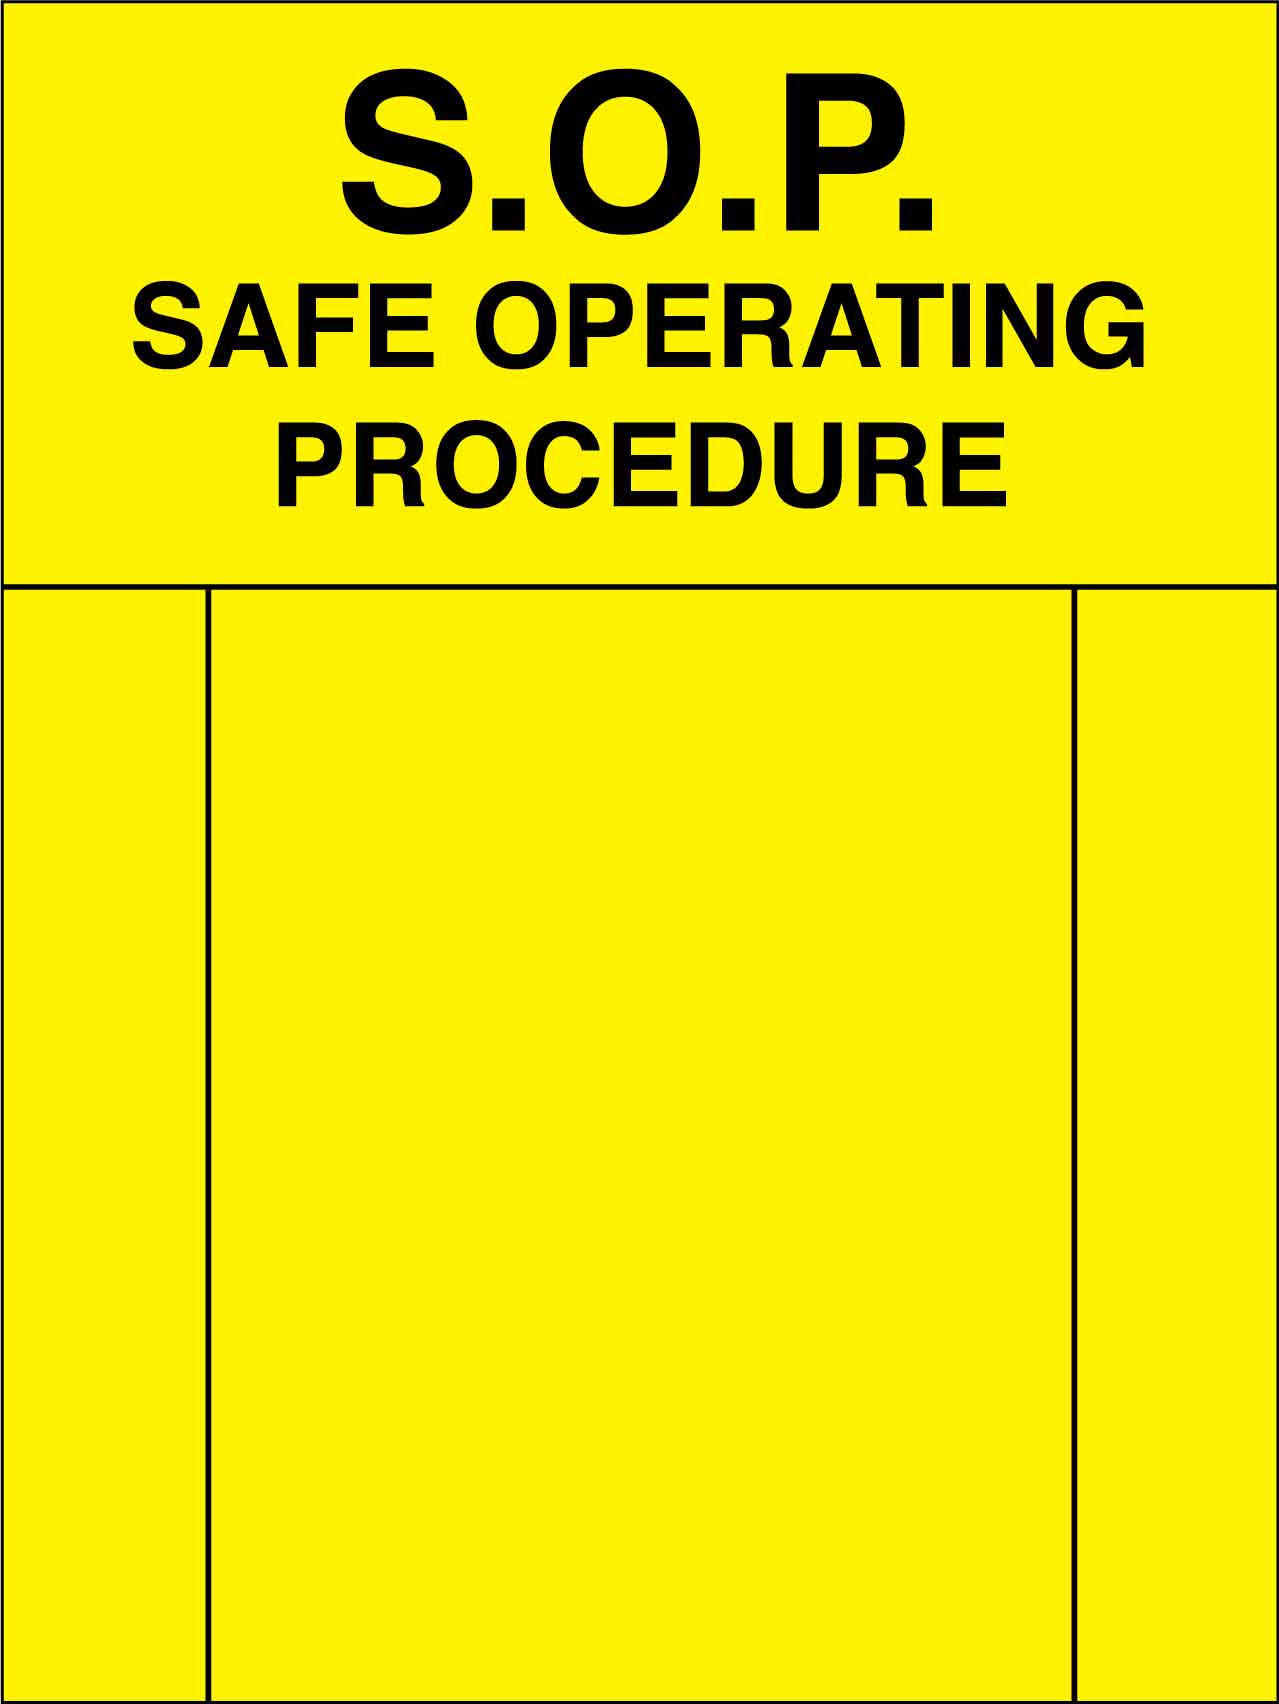 SOP Safe Operating Procedure Sign